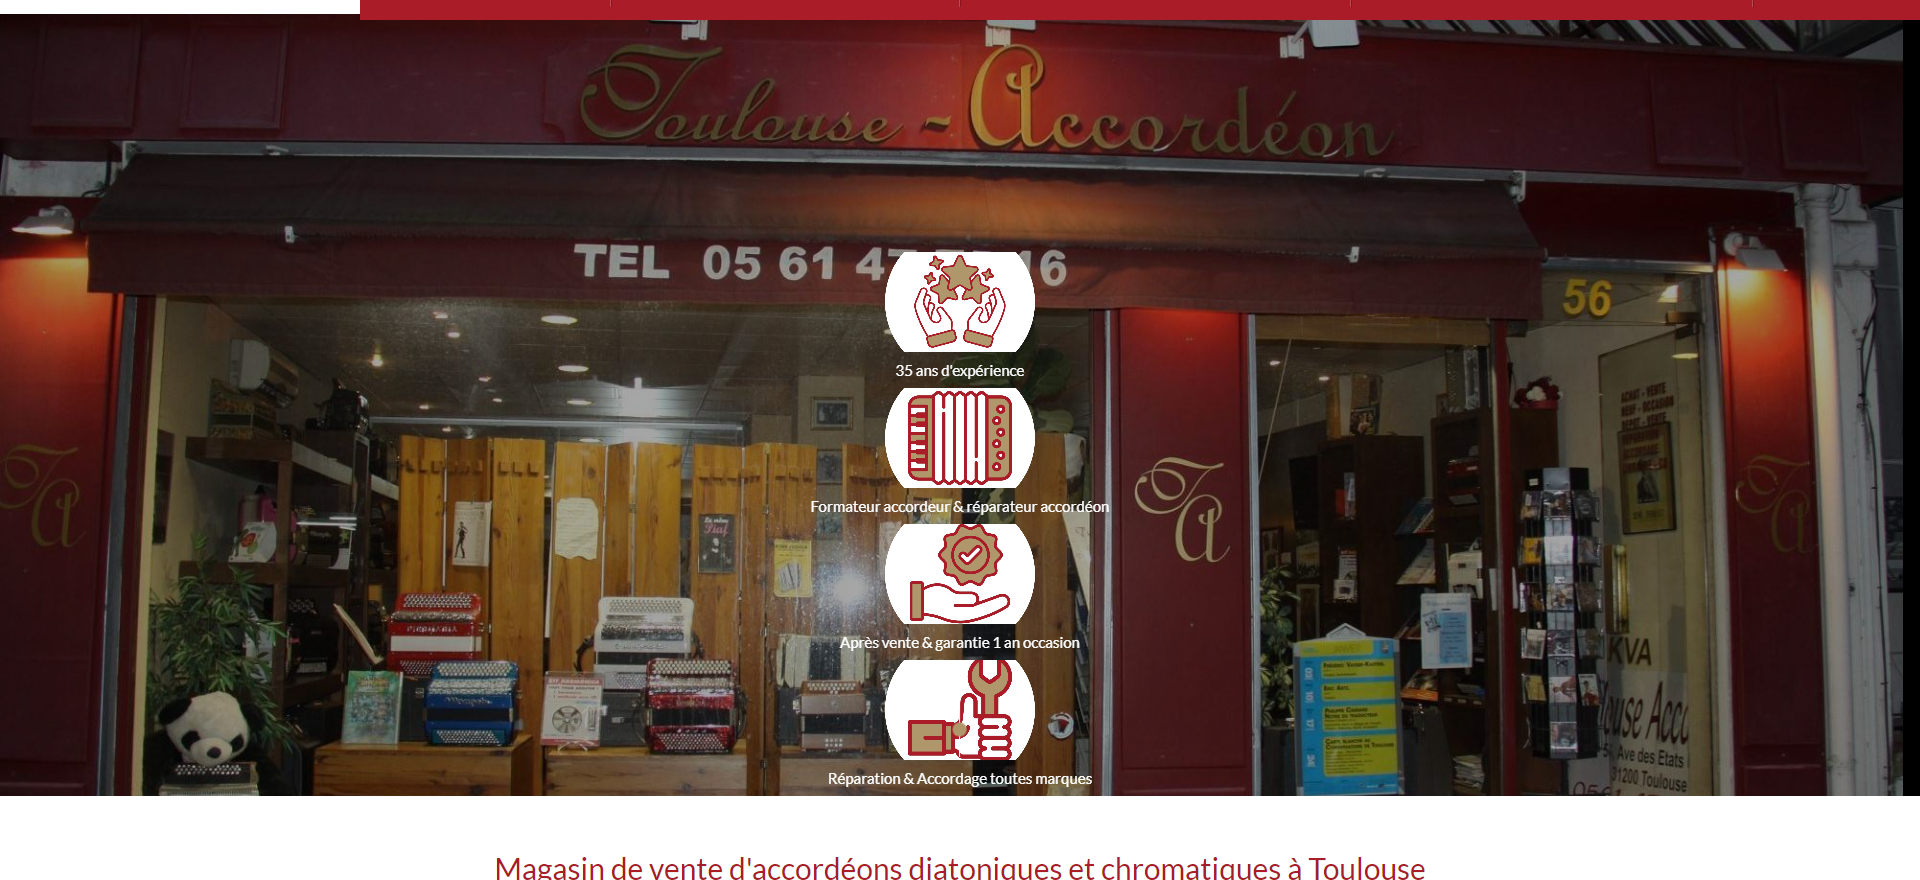 Toulouse Accordéon, magasin de vente d'accordéon neuf et d'occasion à Toulouse